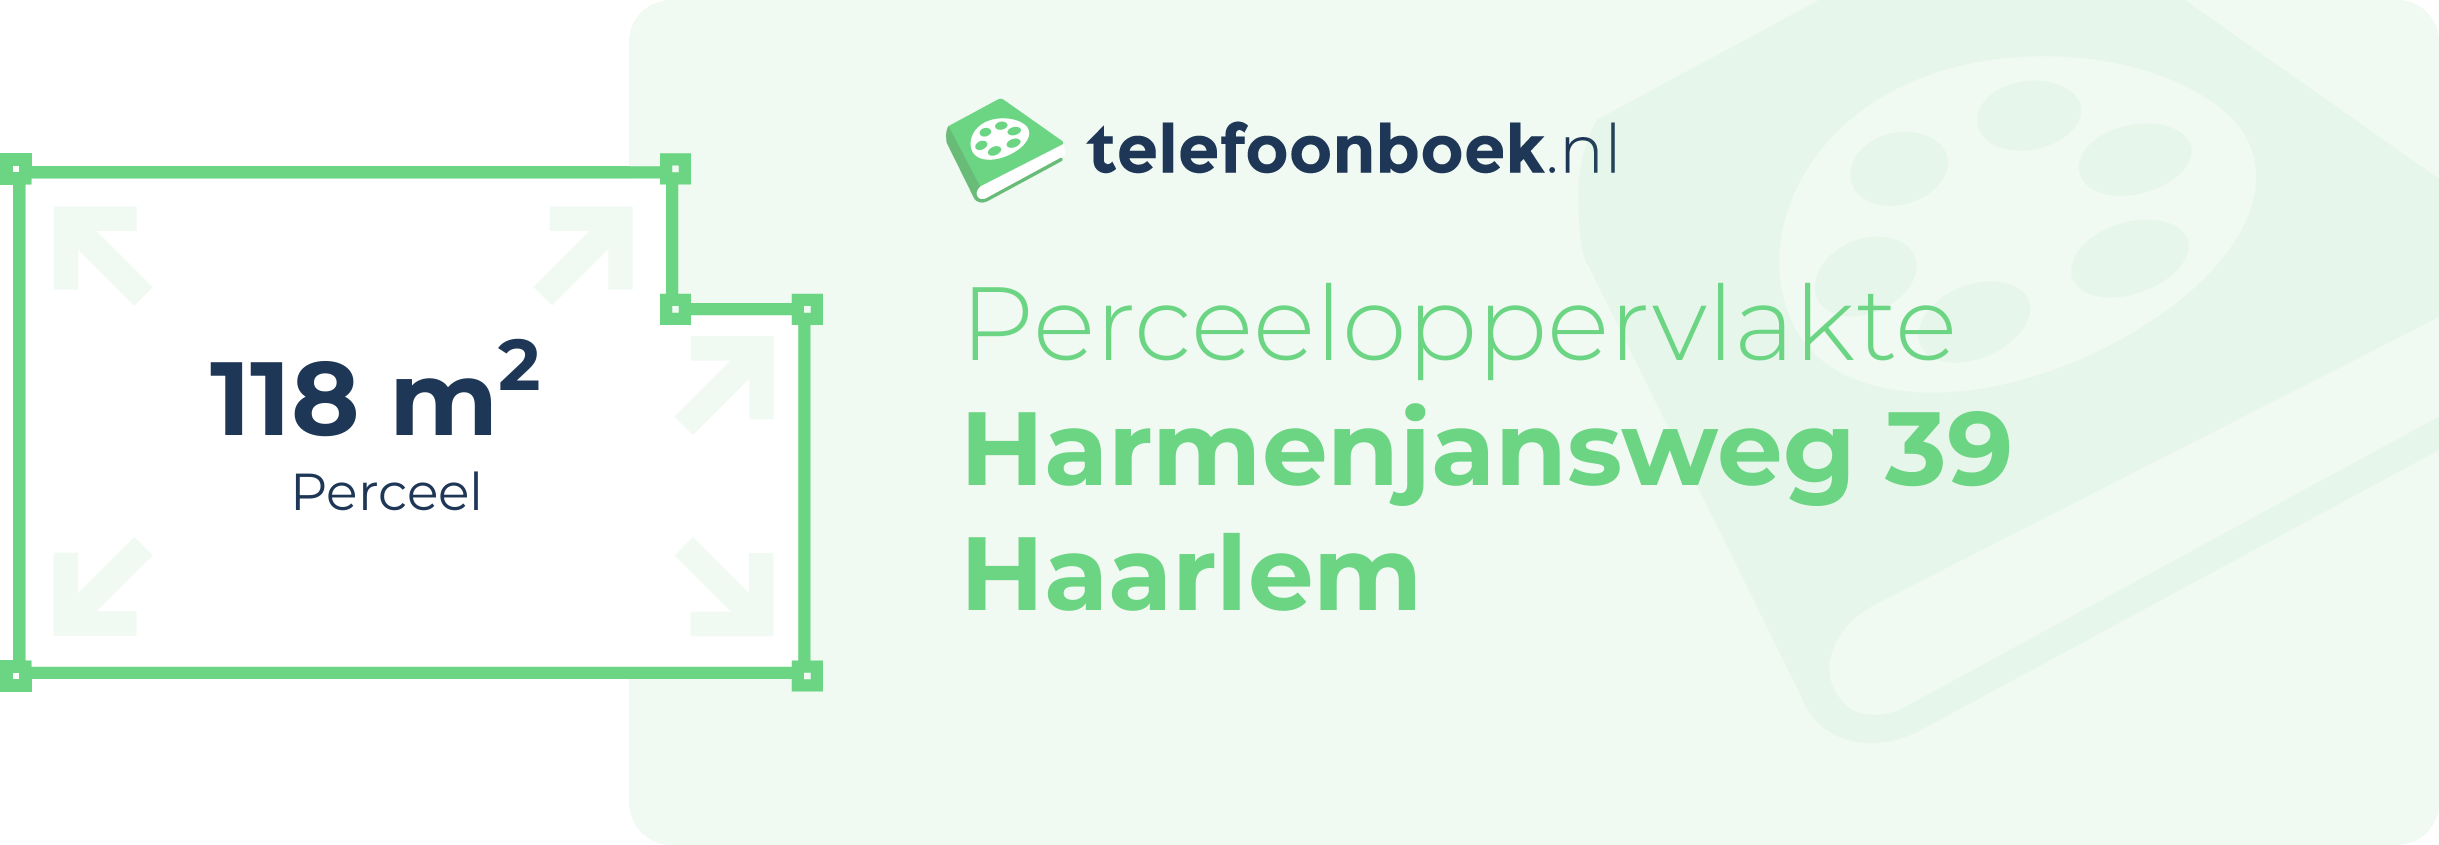 Perceeloppervlakte Harmenjansweg 39 Haarlem